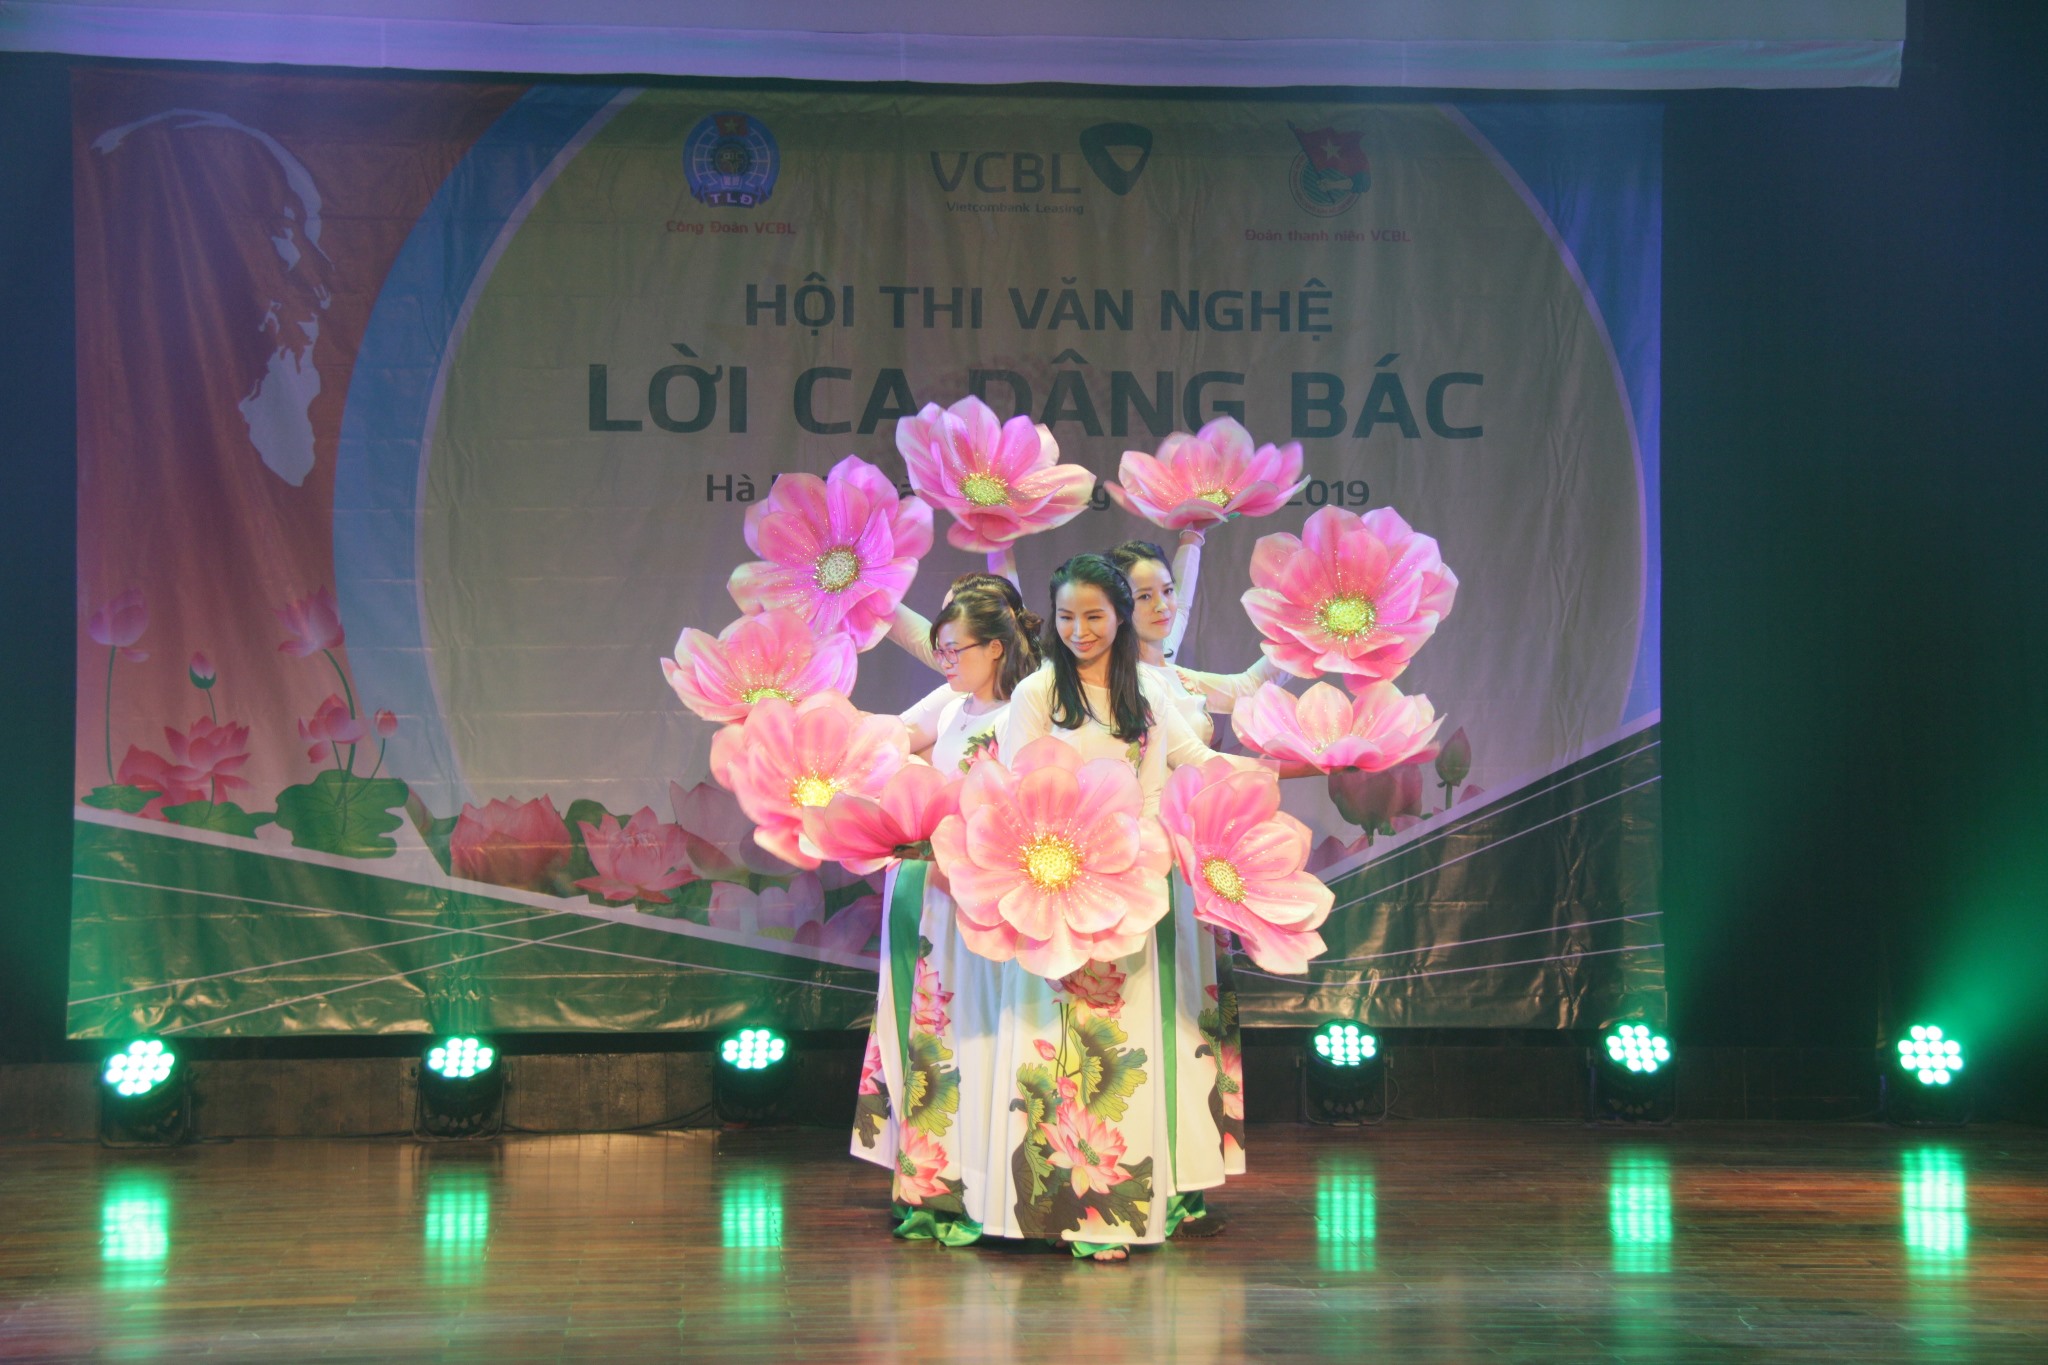 Công ty Cho thuê tài chính Vietcombank tổ chức thành công Hội thi văn nghệ chào mừng 129 năm ngày sinh Chủ tịch Hồ Chí Minh